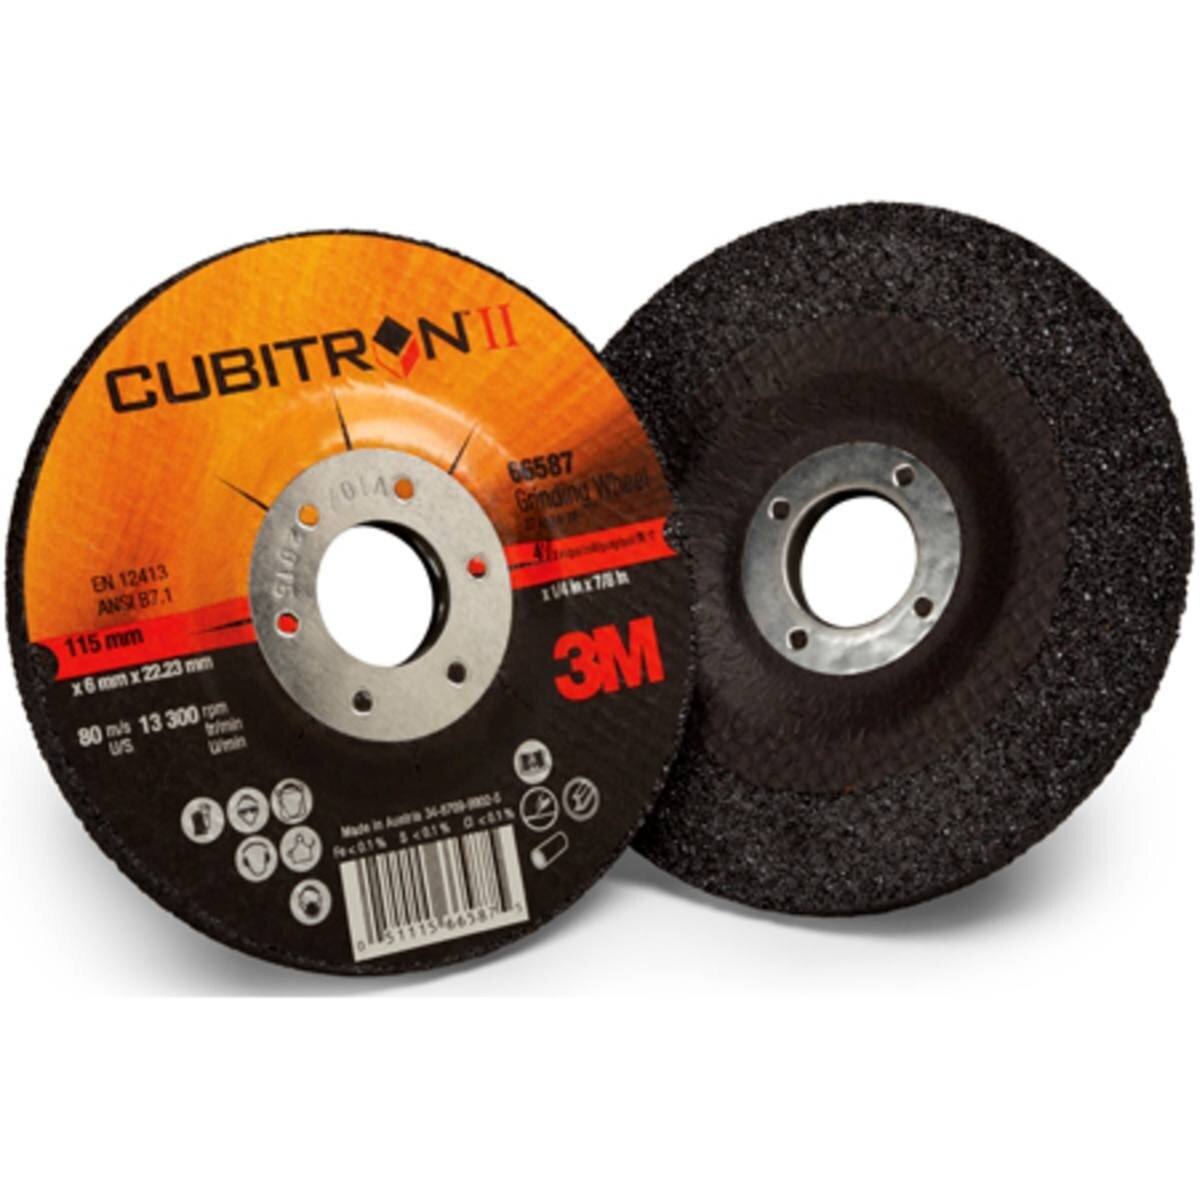 3M Cubitron II disco de desbaste 125 mm, 7.0 mm, 22.23mm #65509IPS